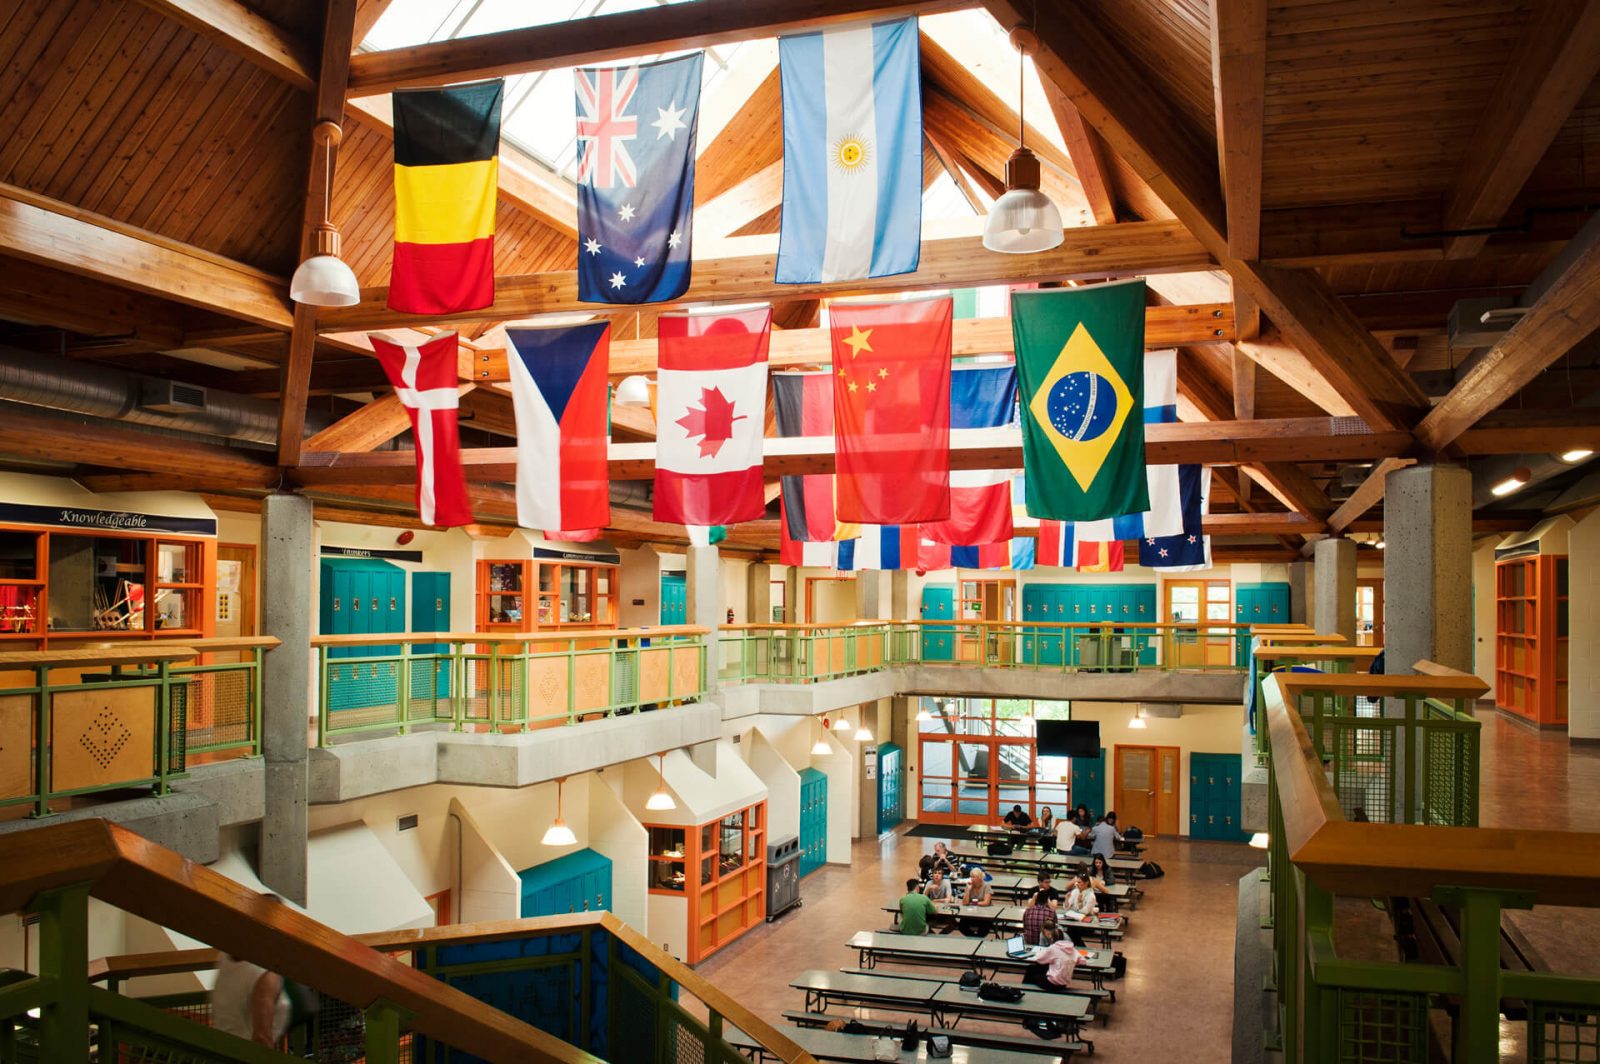 Hall principal de instituto, con taquillas y banderas de distintos países colgando del techo